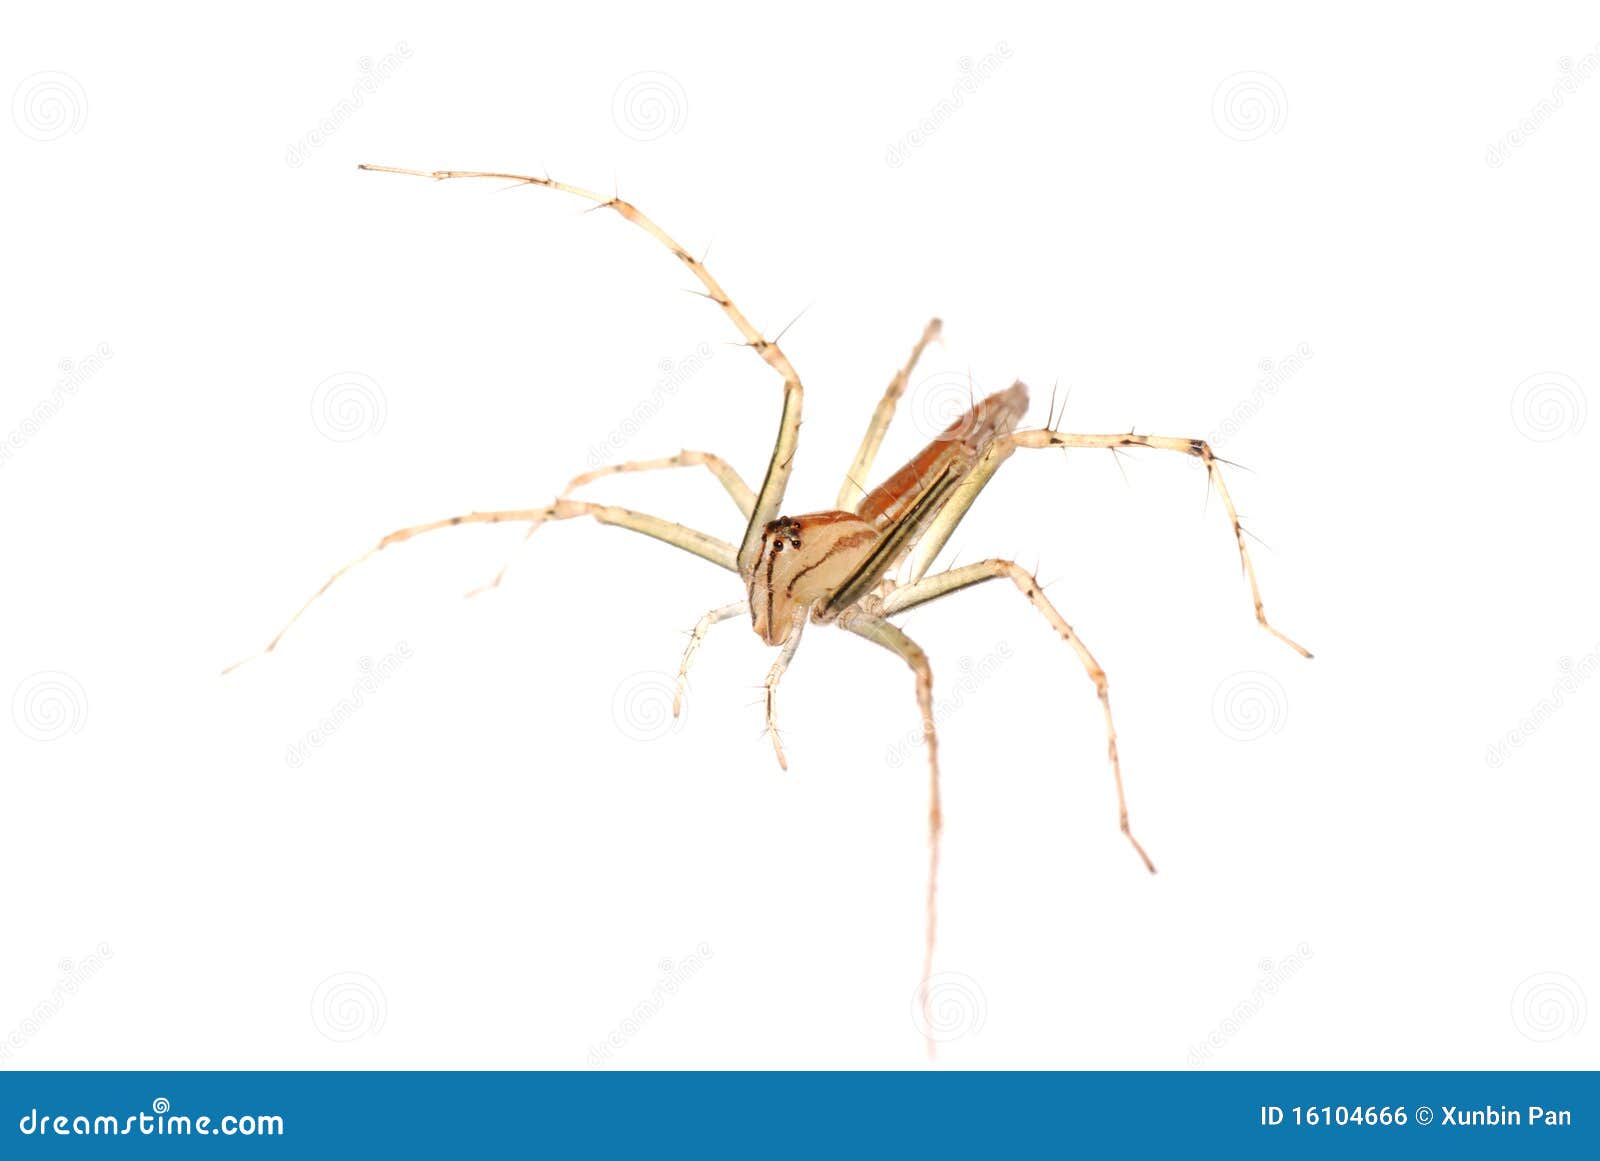 animal spider